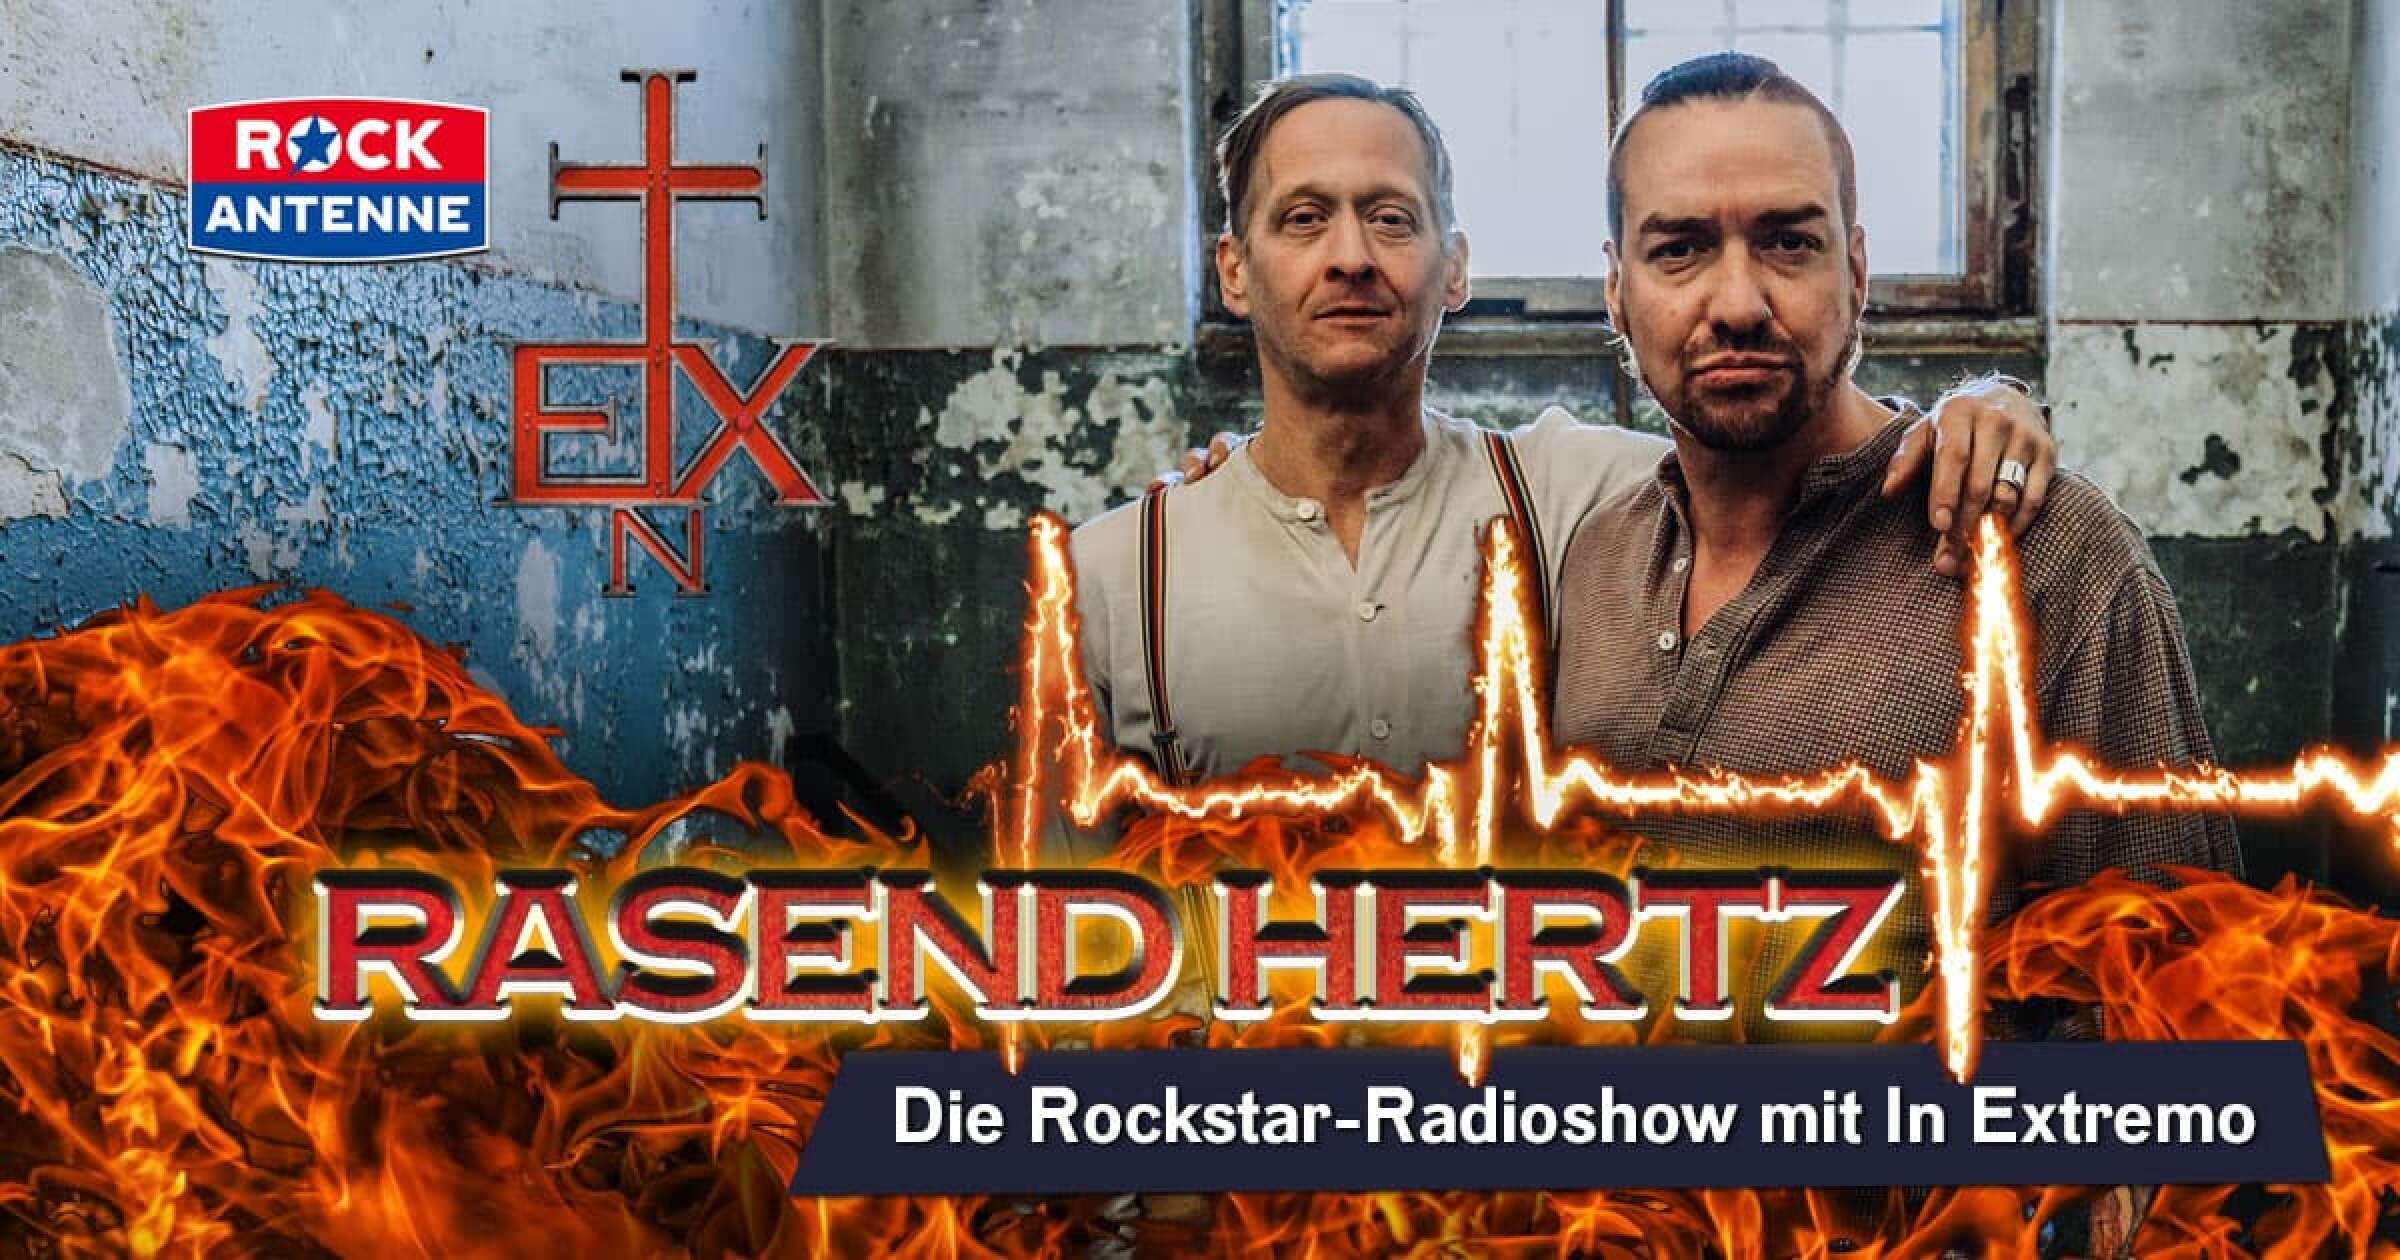 Rockstar-Radioshow mit In Extremo